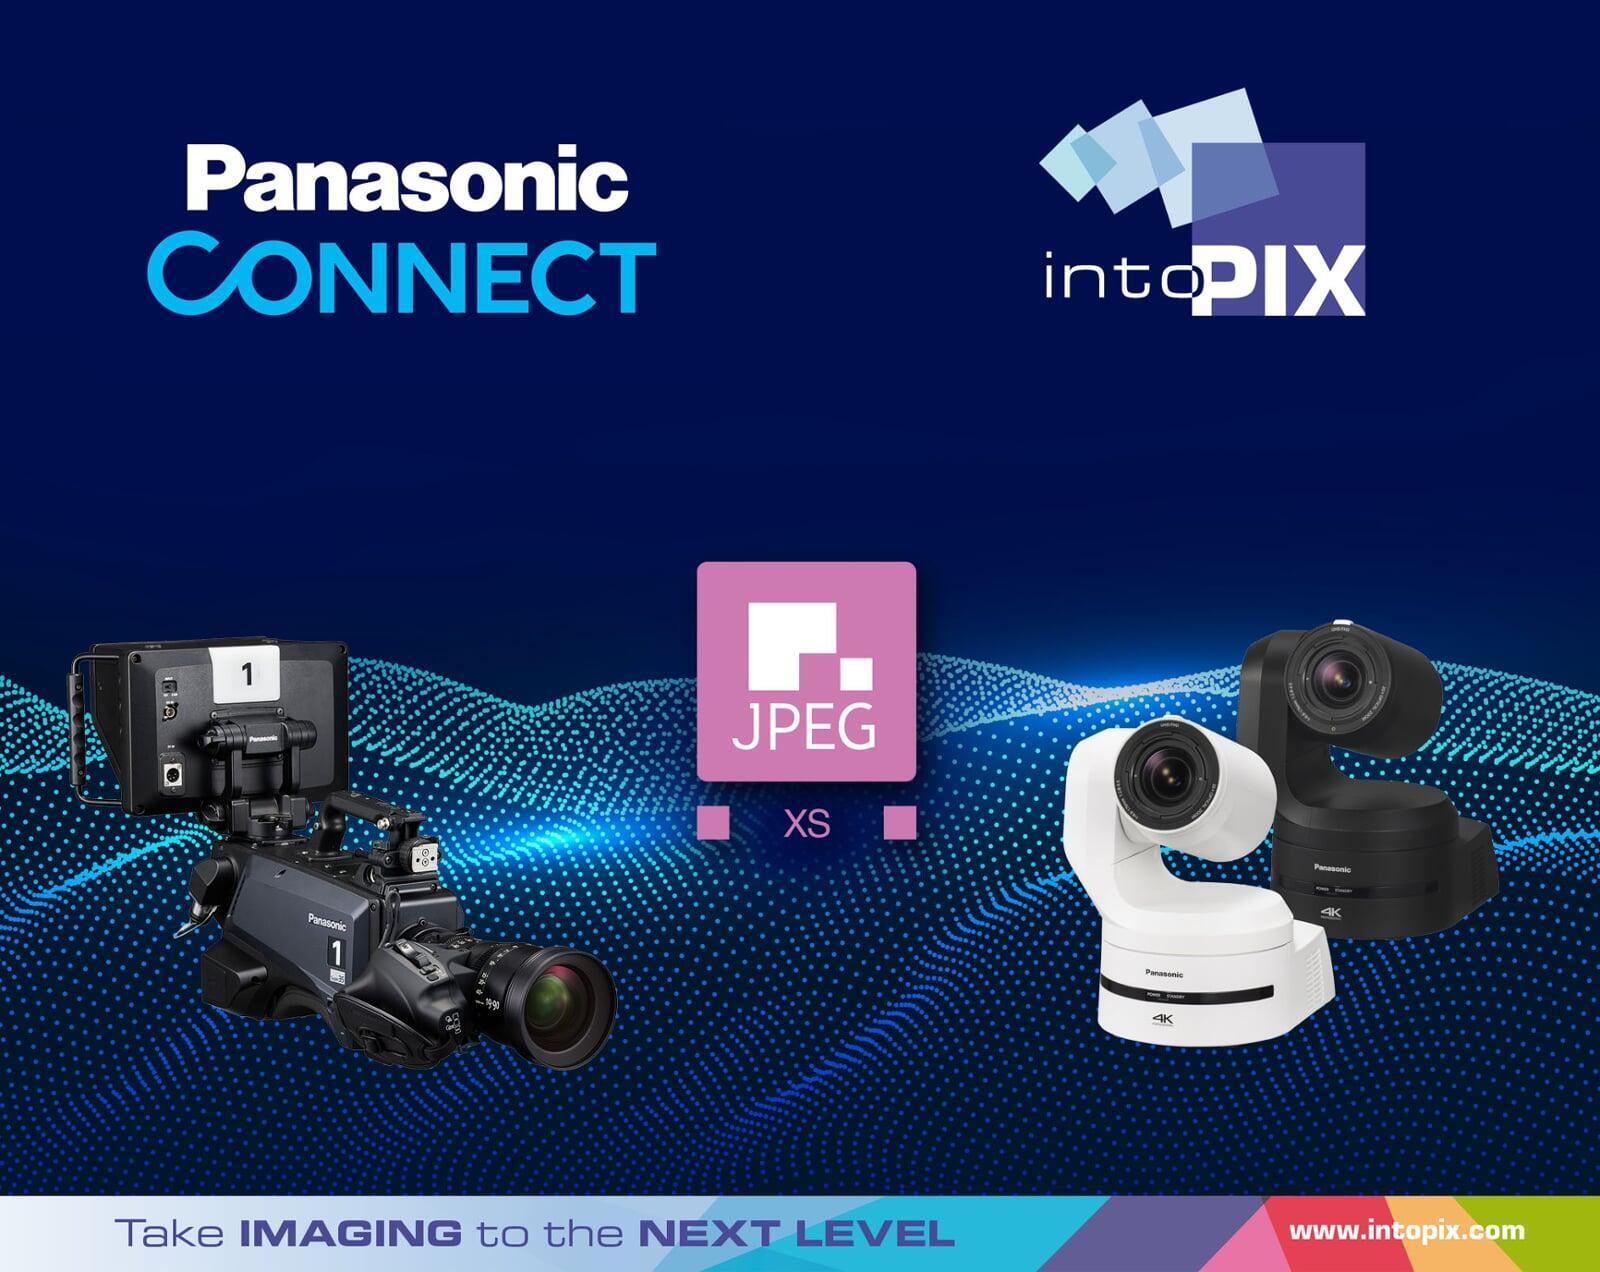 intoPIX collabores avec Panasonic Connect pour le lancement de leurs nouvelles caméras JPEG XS dédiées à la production video en Live